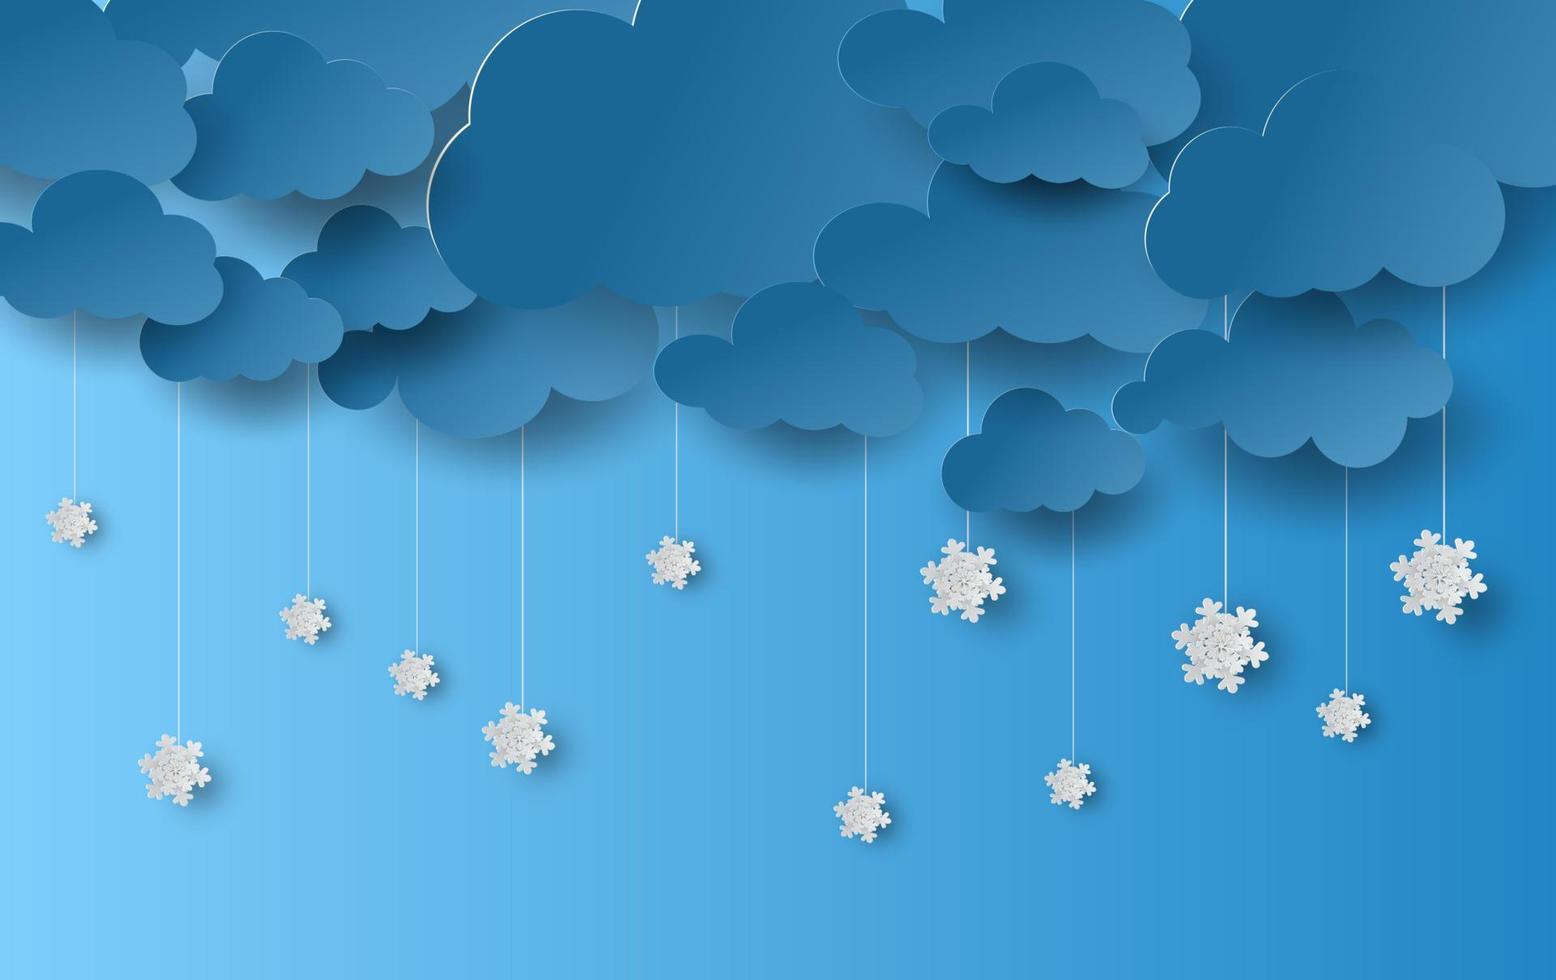 arte di carta e stile artigianale di nuvole e nevicate con la stagione invernale su sfondo blu cielo.la stagione della neve sta cadendo.vettore.illustrazione vettore